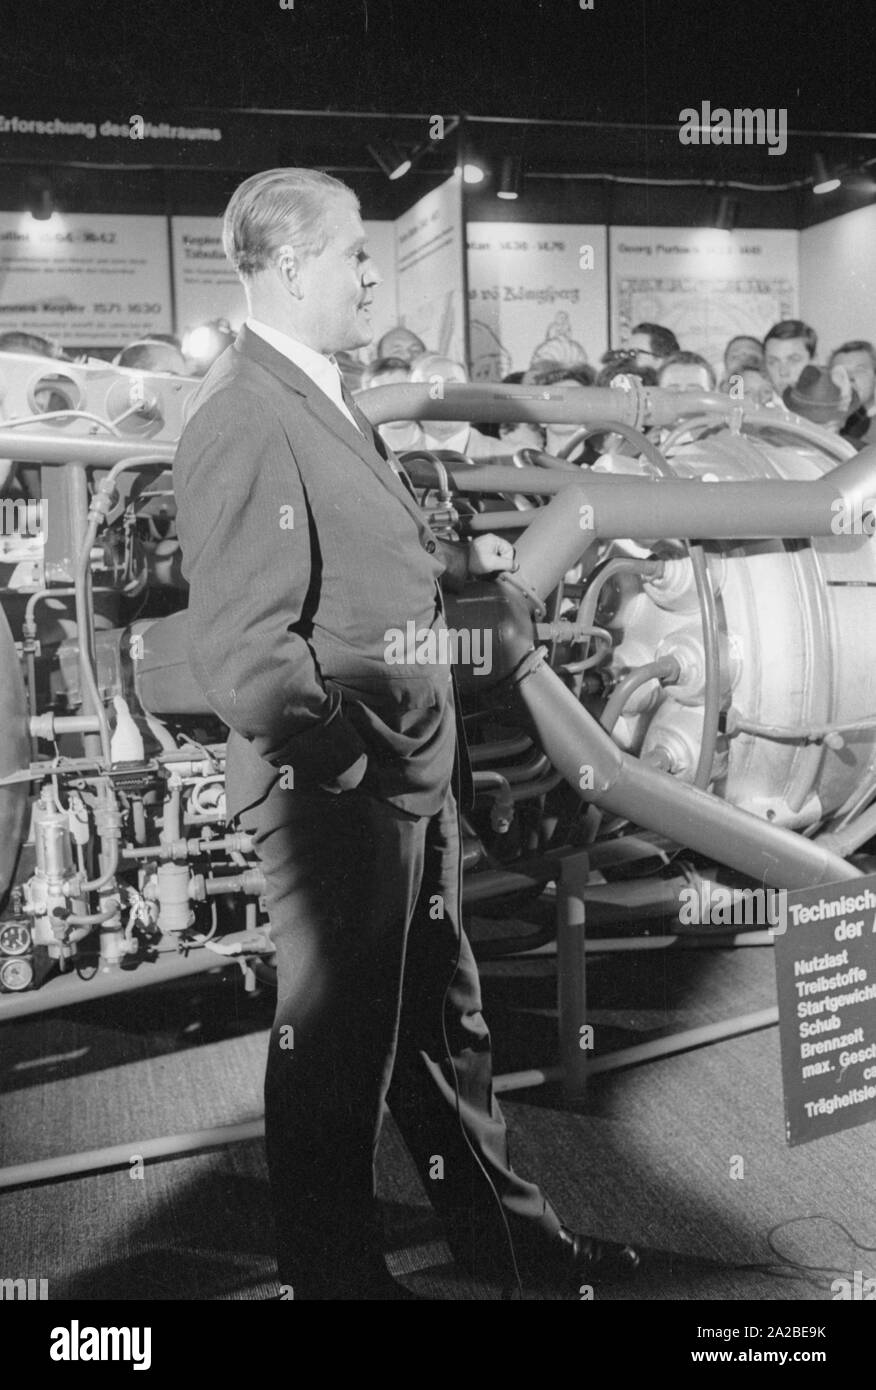 El ingeniero Wernher von Braun visita la Exposición Internacional de Transporte (IVA) en el centro de exposiciones Theresienhöhe en Munich. Aquí él está delante de la Aggregat 4 (A4), el primer gran cohete, propulsado por un motor de cohete de propulsante líquido, que fue desarrollado bajo su liderazgo. Foto de stock